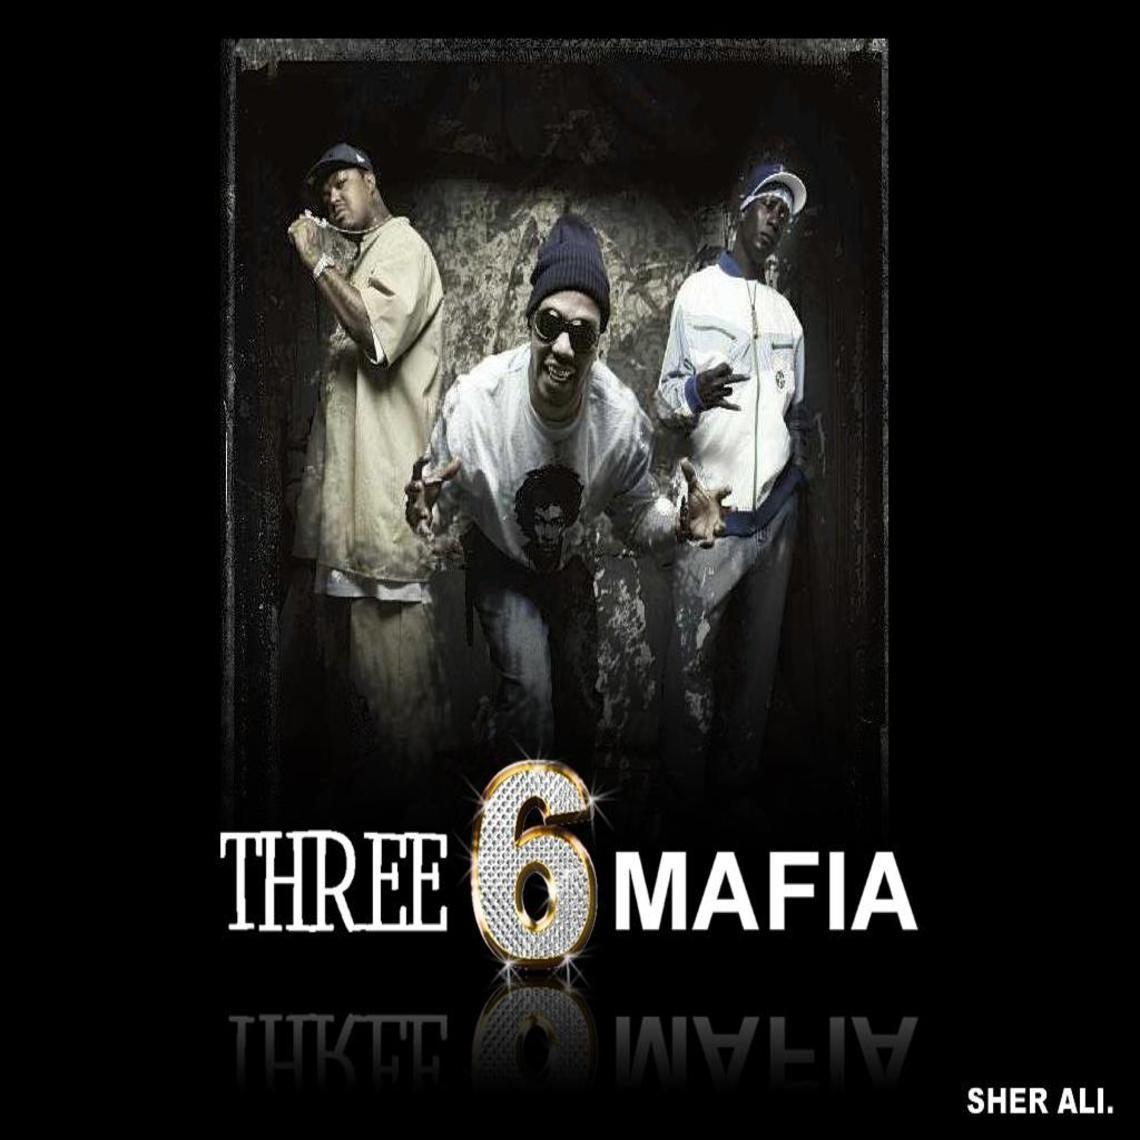 THREE SIX MAFIA. Three 6 mafia, Mafia, Mafia wallpaper